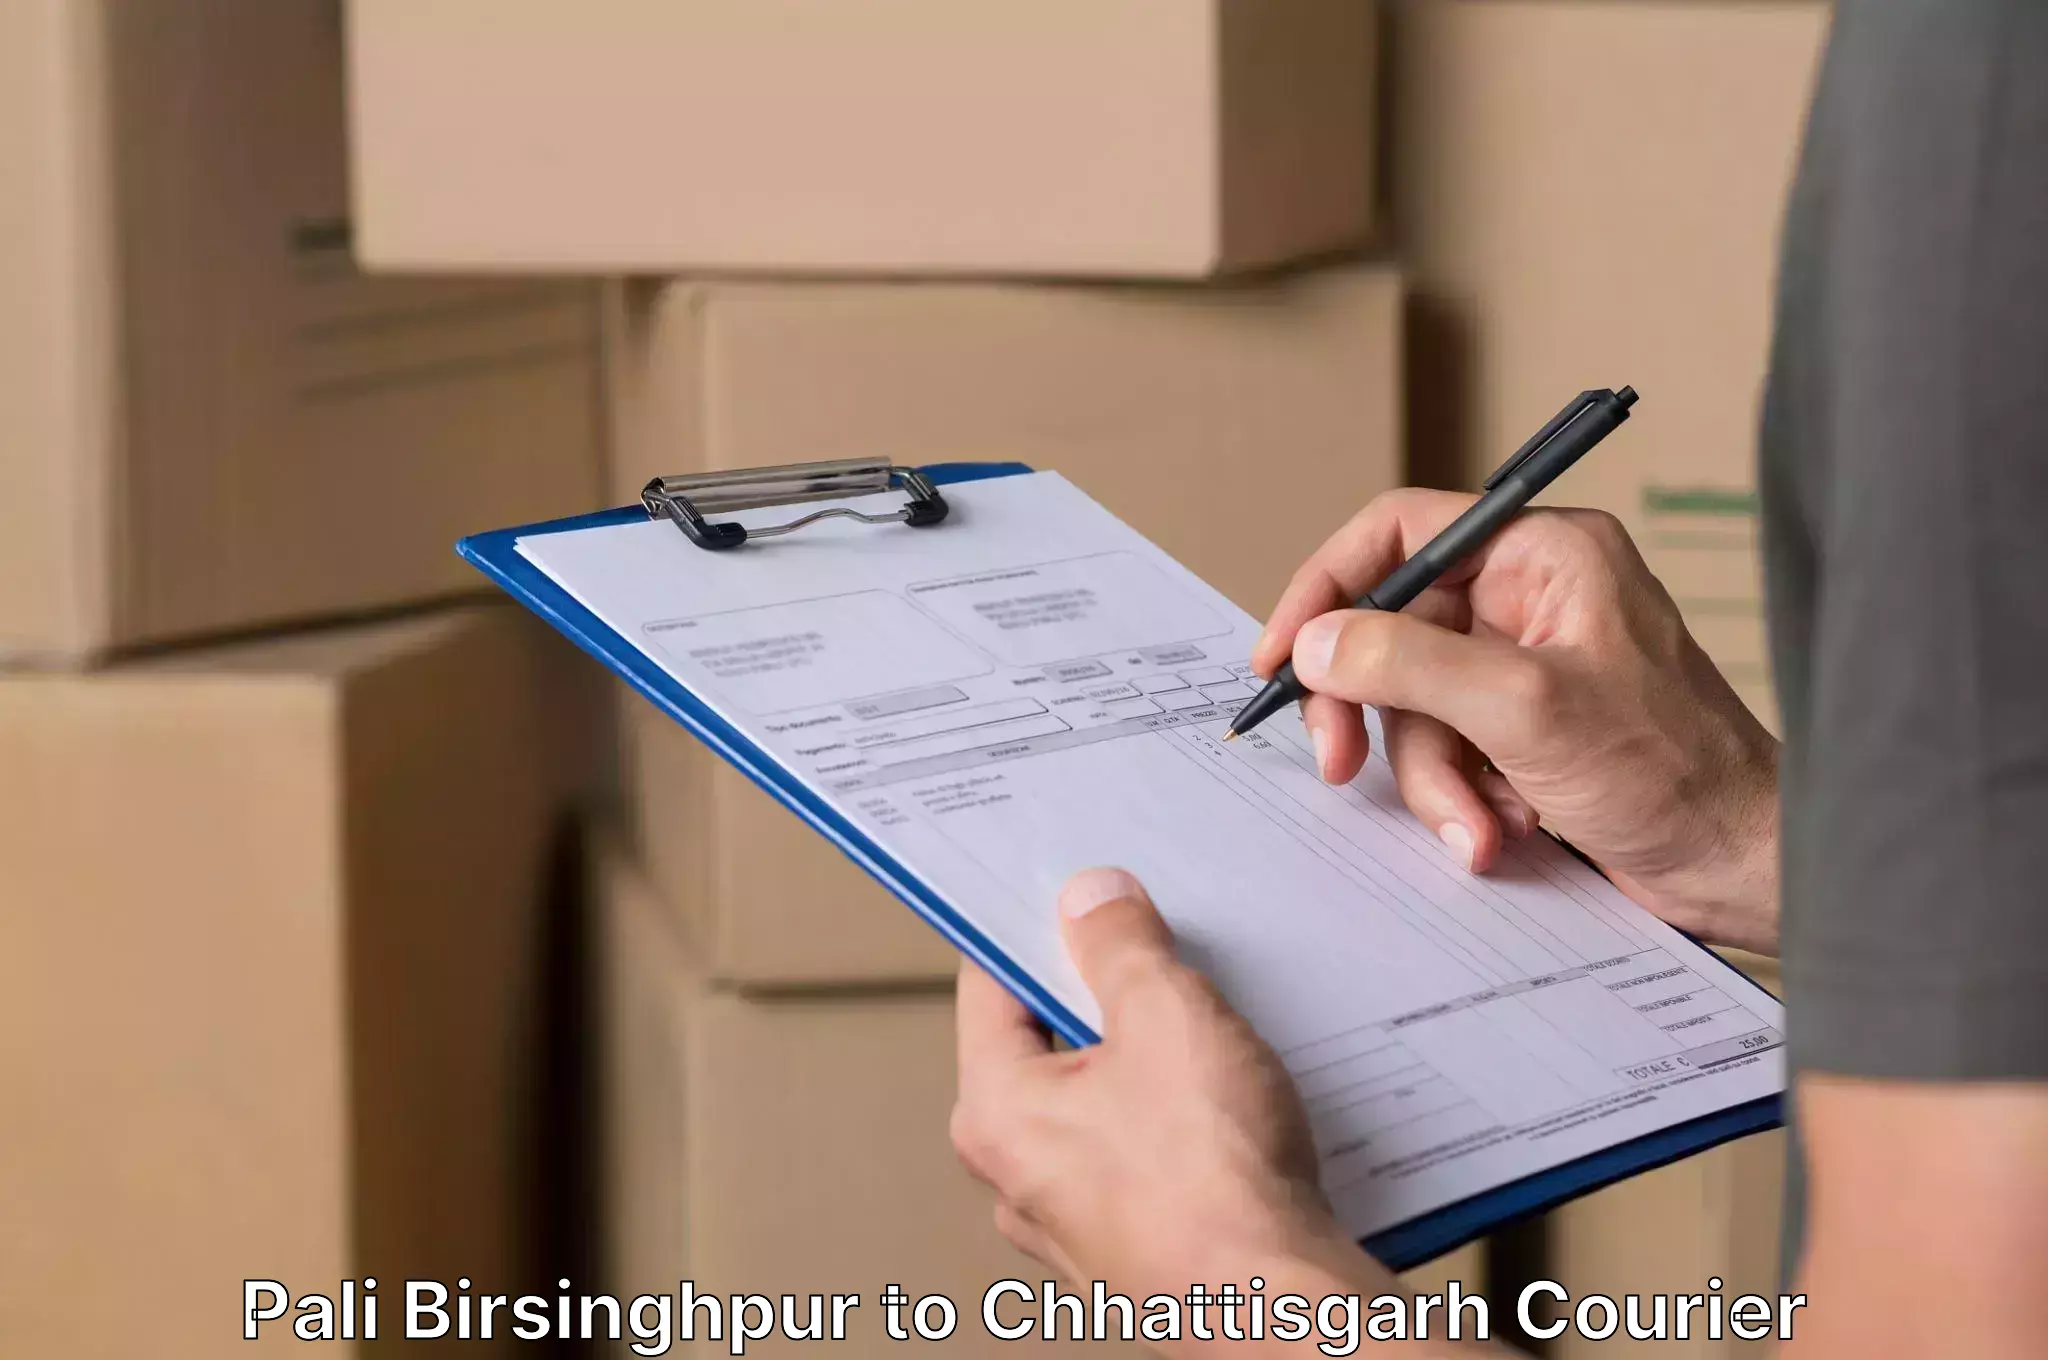 Furniture delivery service in Pali Birsinghpur to Bijapur Chhattisgarh